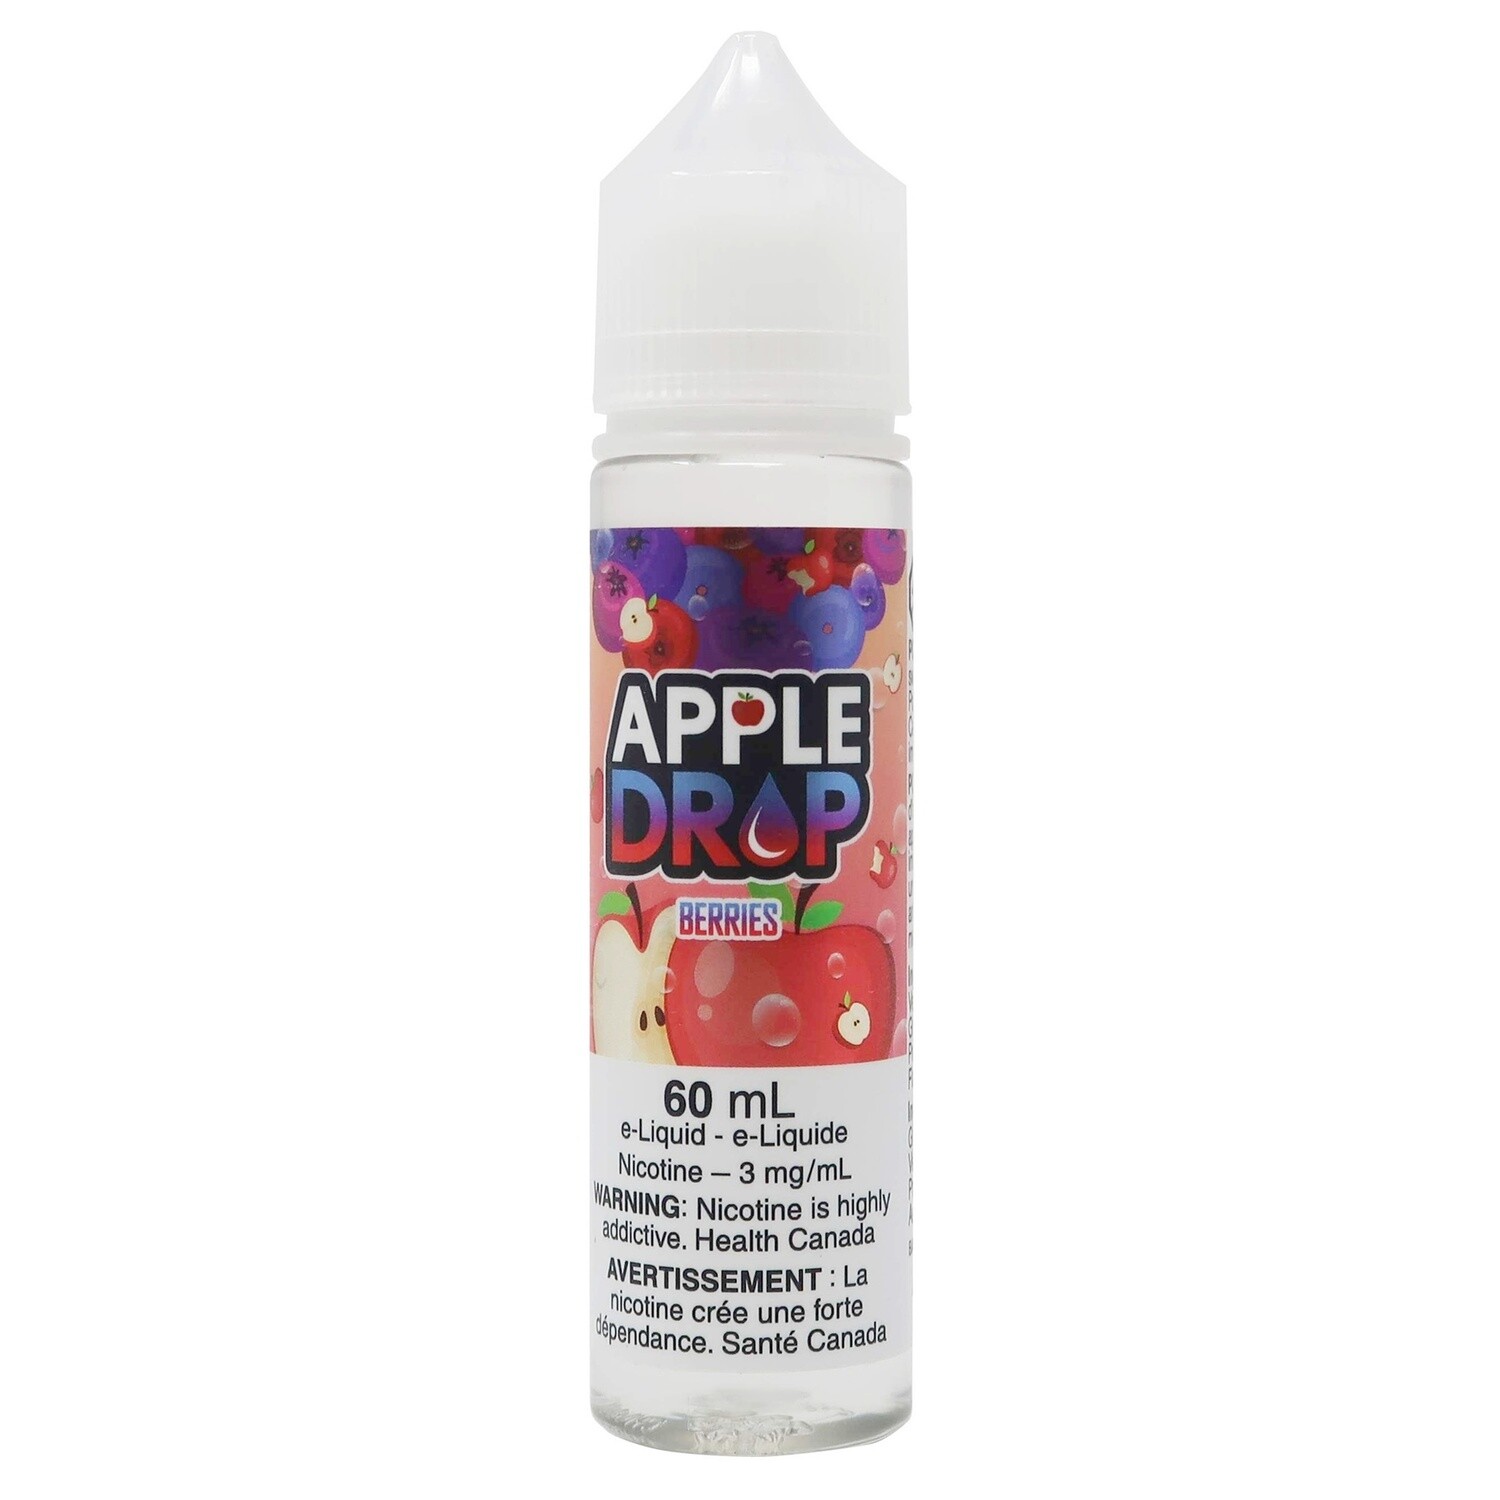 Apple Drop - Berries (60ml) Eliquid